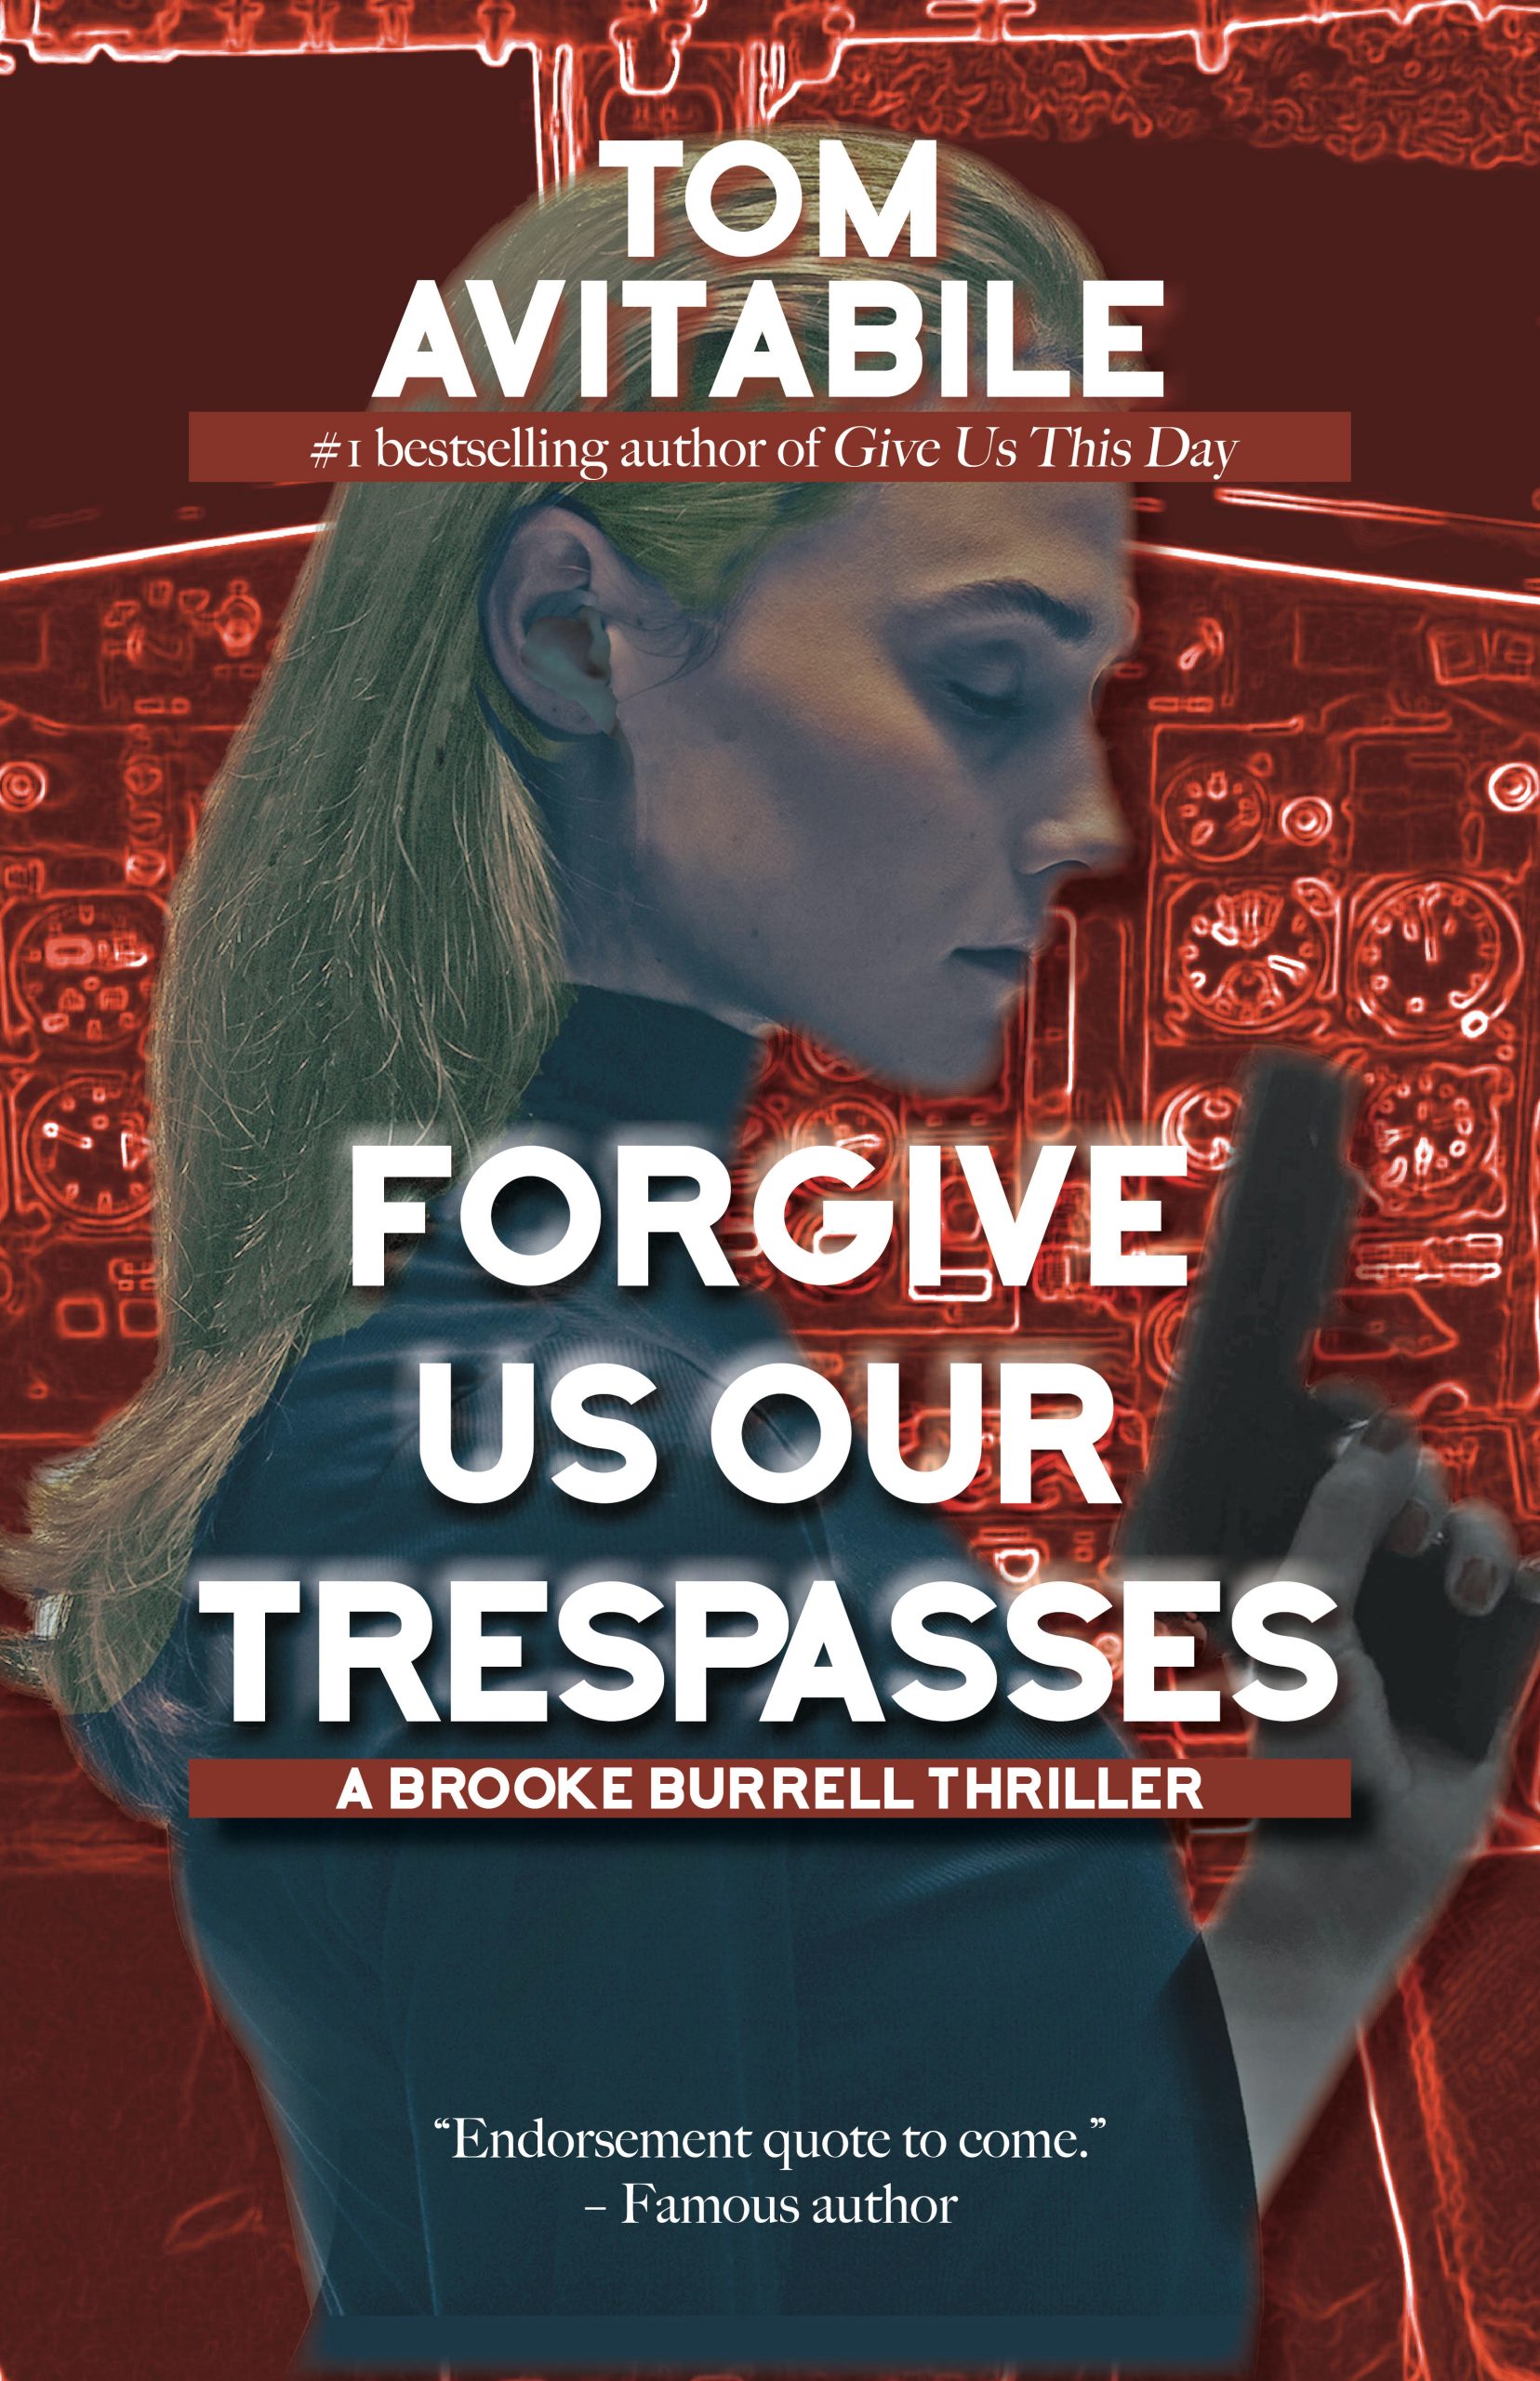 Forgive Us Our Trespasses by Tom Avitabile